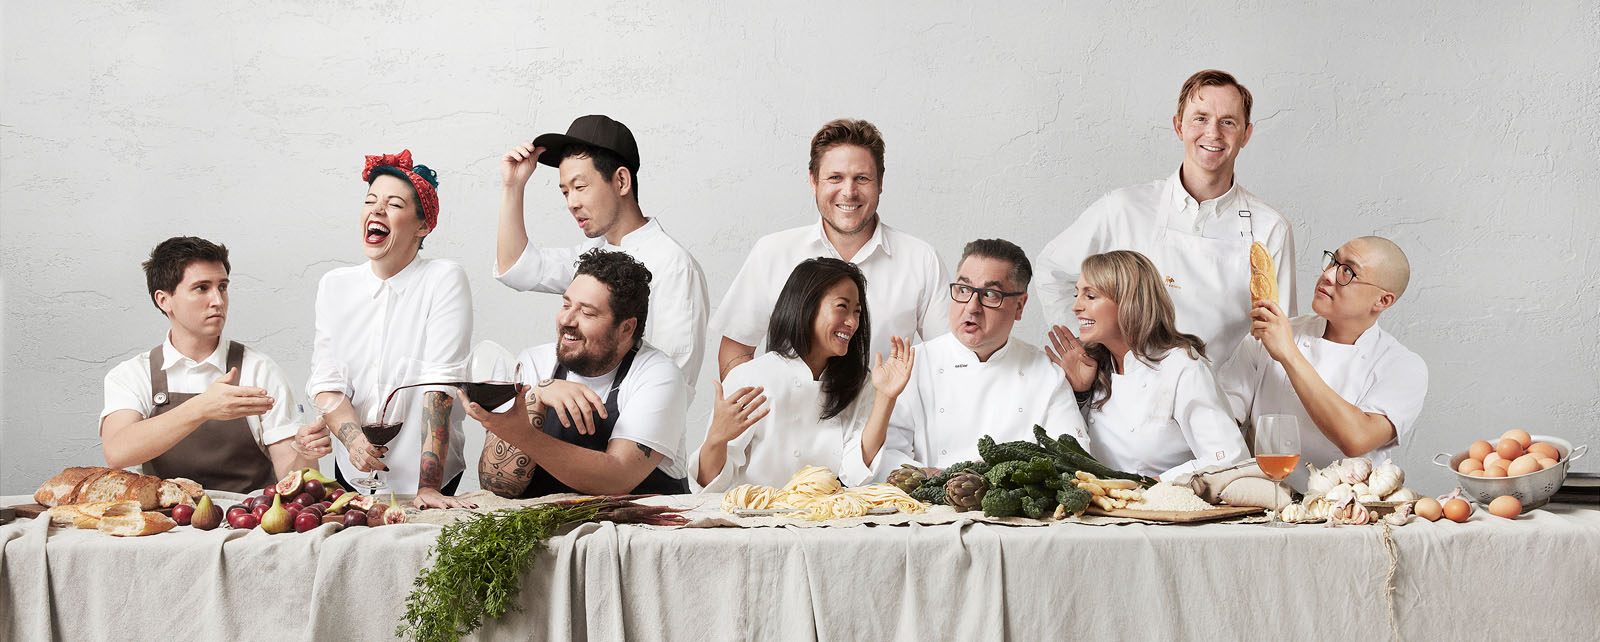 The 10 Gourmet Institute 2019 Chefs